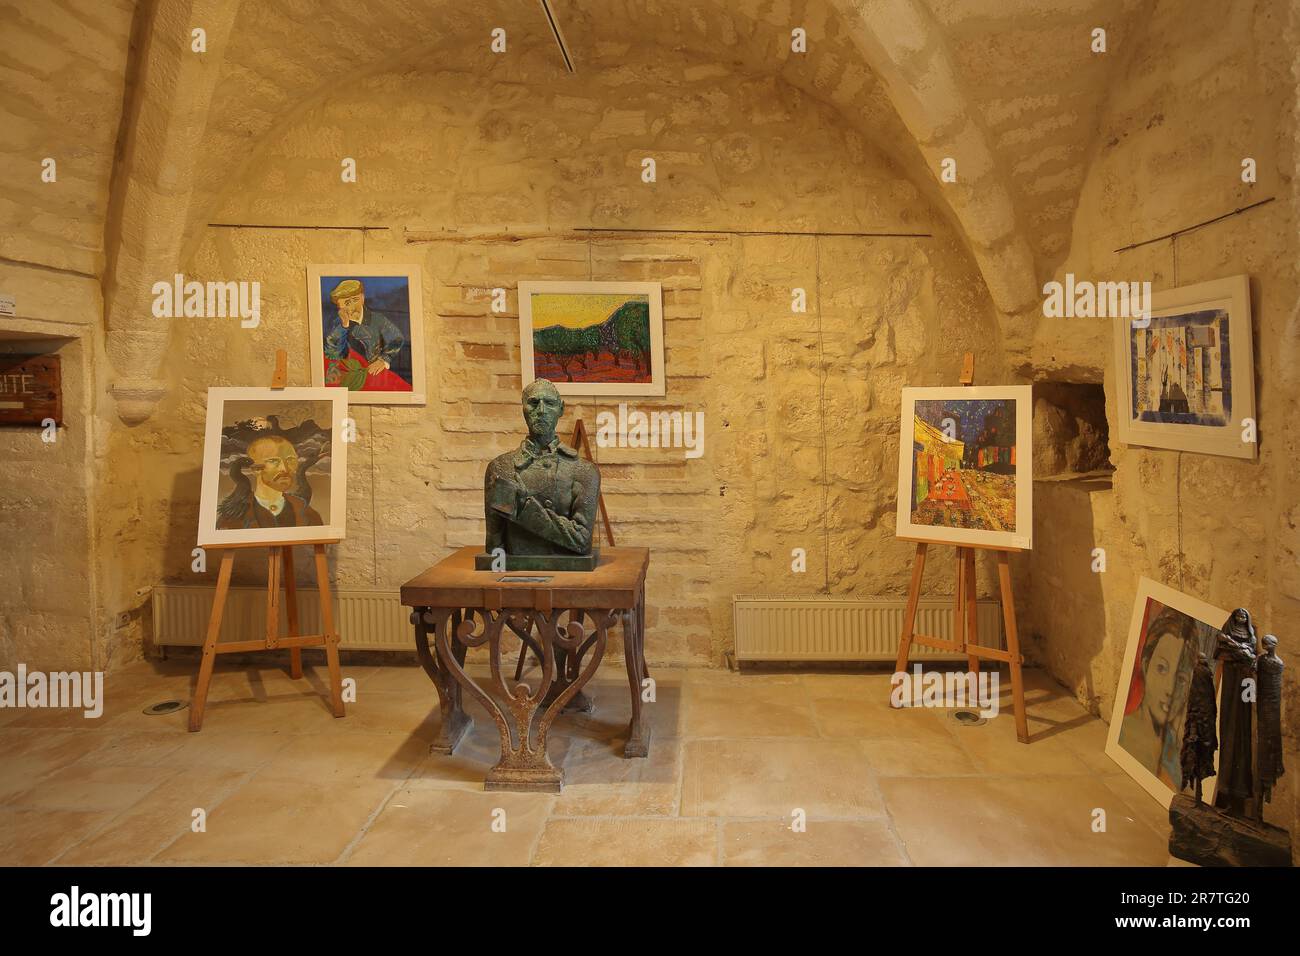 Musée Circut van Gogh avec buste et peinture copies de Vincent van Gogh, Saint-Paul-de-Mausole, Saint, Saint-Rémy-de-Provence, Provence, Alpilles Banque D'Images